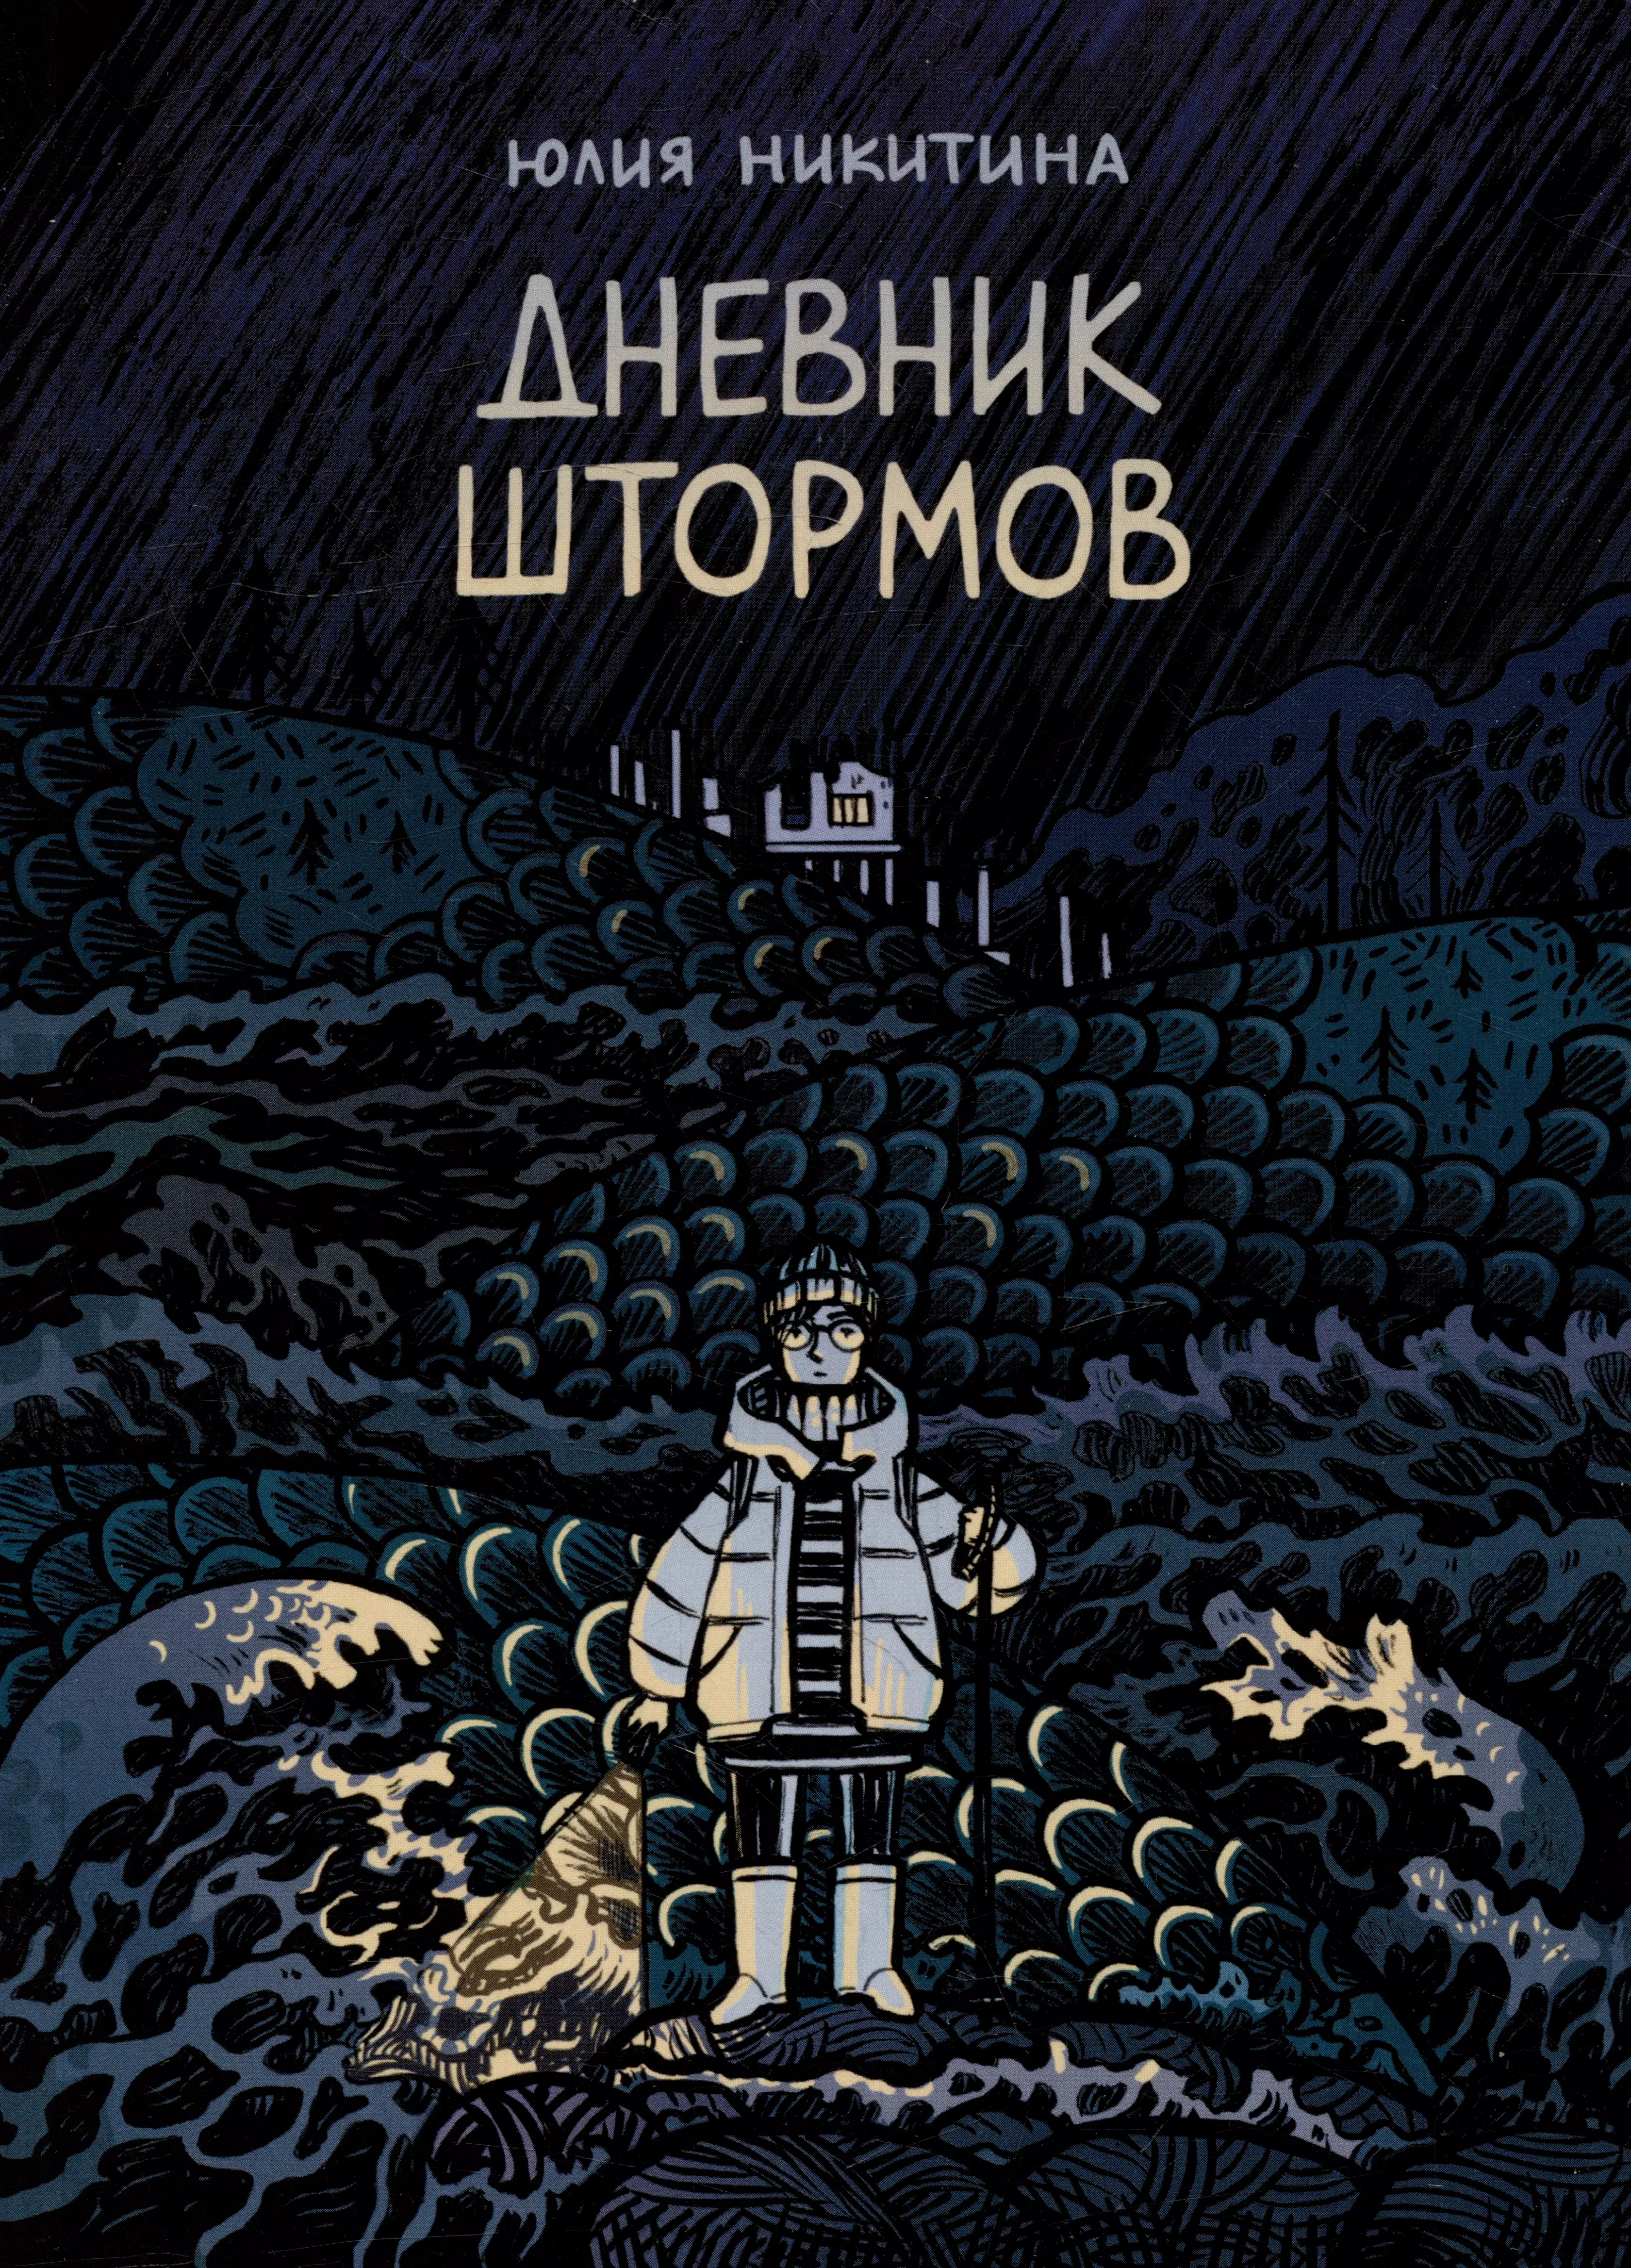 Никитина Юлия Дневник штормов: графический роман никитина юлия время ждать